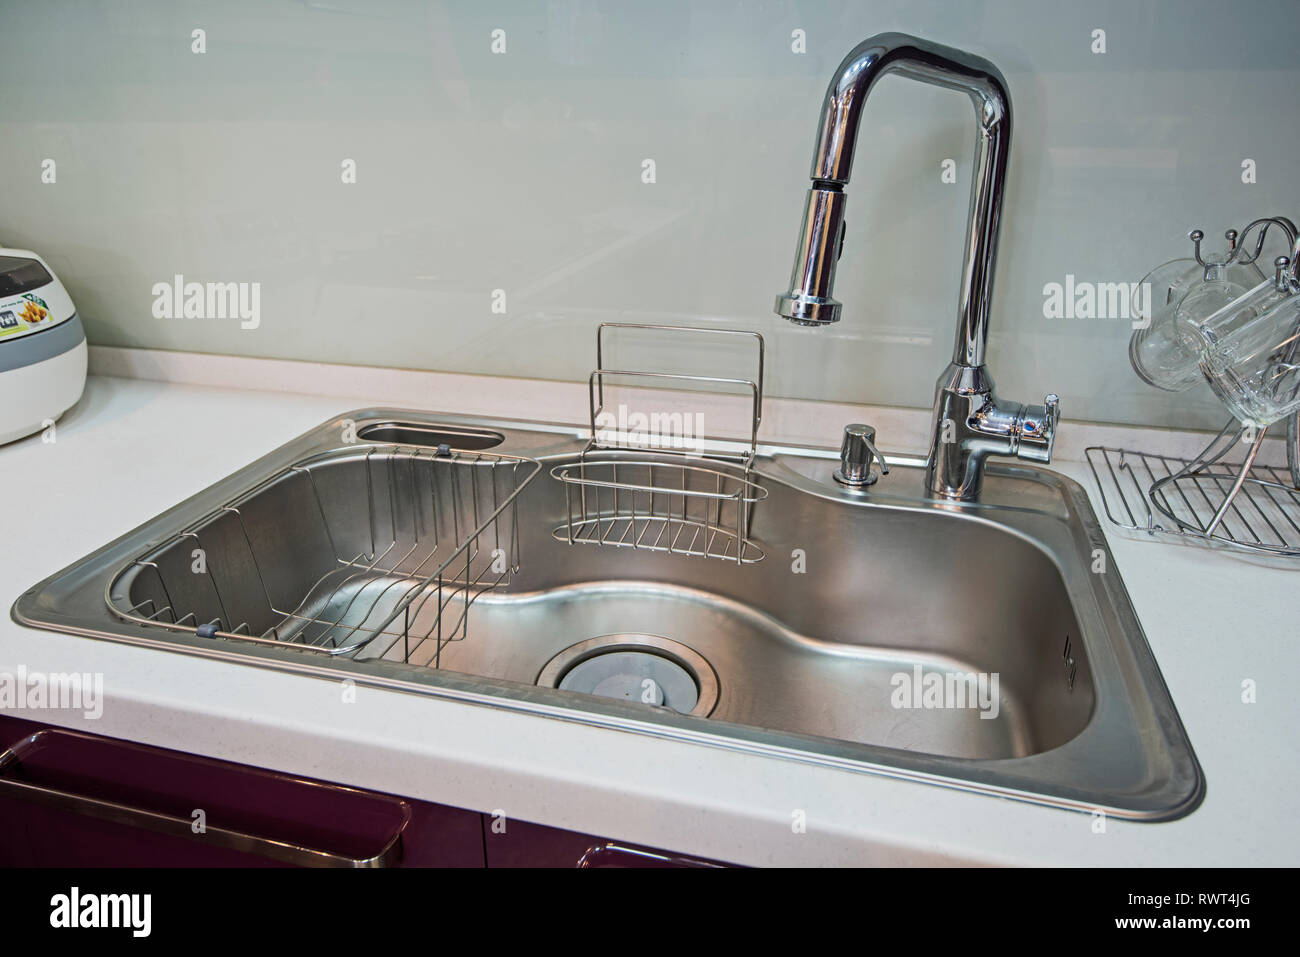 Interior design decor showing modern kitchen sink in luxury apartment showroom Stock Photo